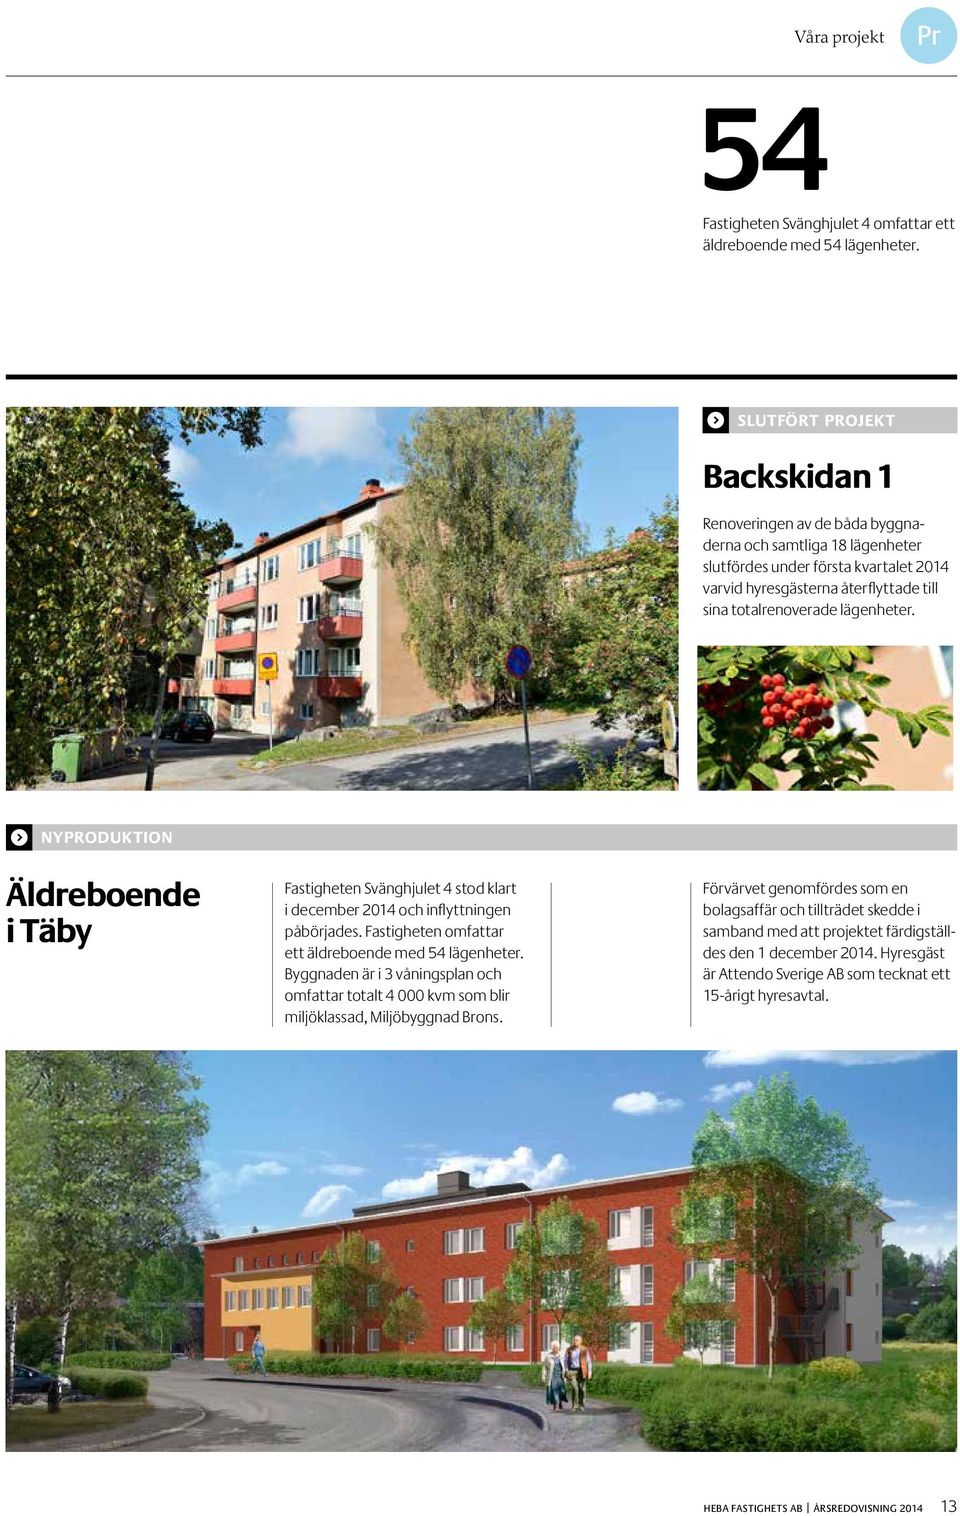 lägenheter. ) NYPRODUKTION NYPRODUKTION Äldreboende i Täby Fastigheten Svänghjulet 4 stod klart i december 2014 och inflyttningen påbörjades. Fastigheten omfattar ett äldreboende med 54 lägenheter.